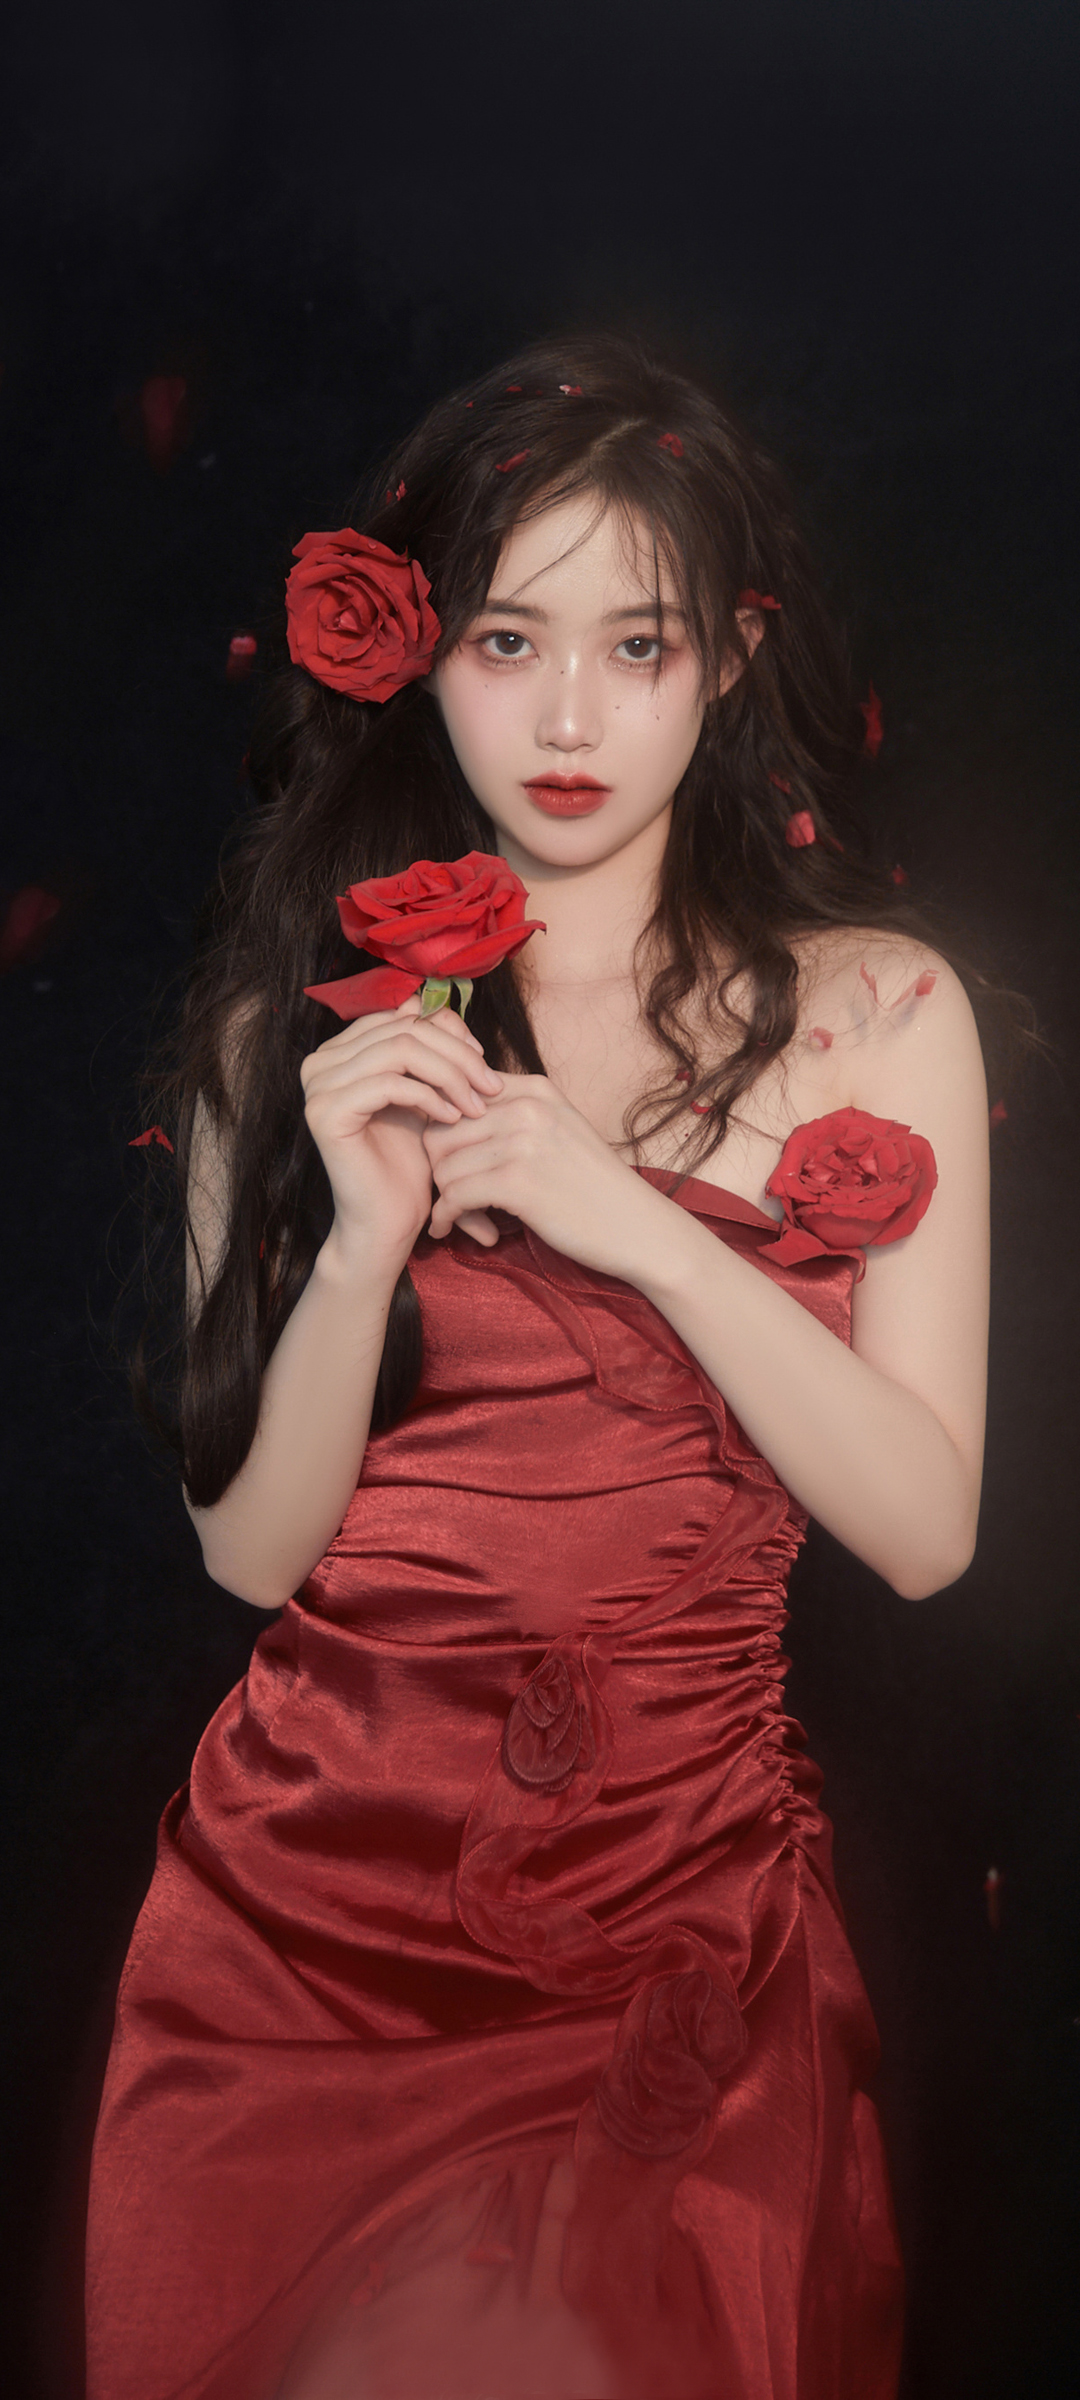 红色裙子礼服 玫瑰花 美女手机壁纸